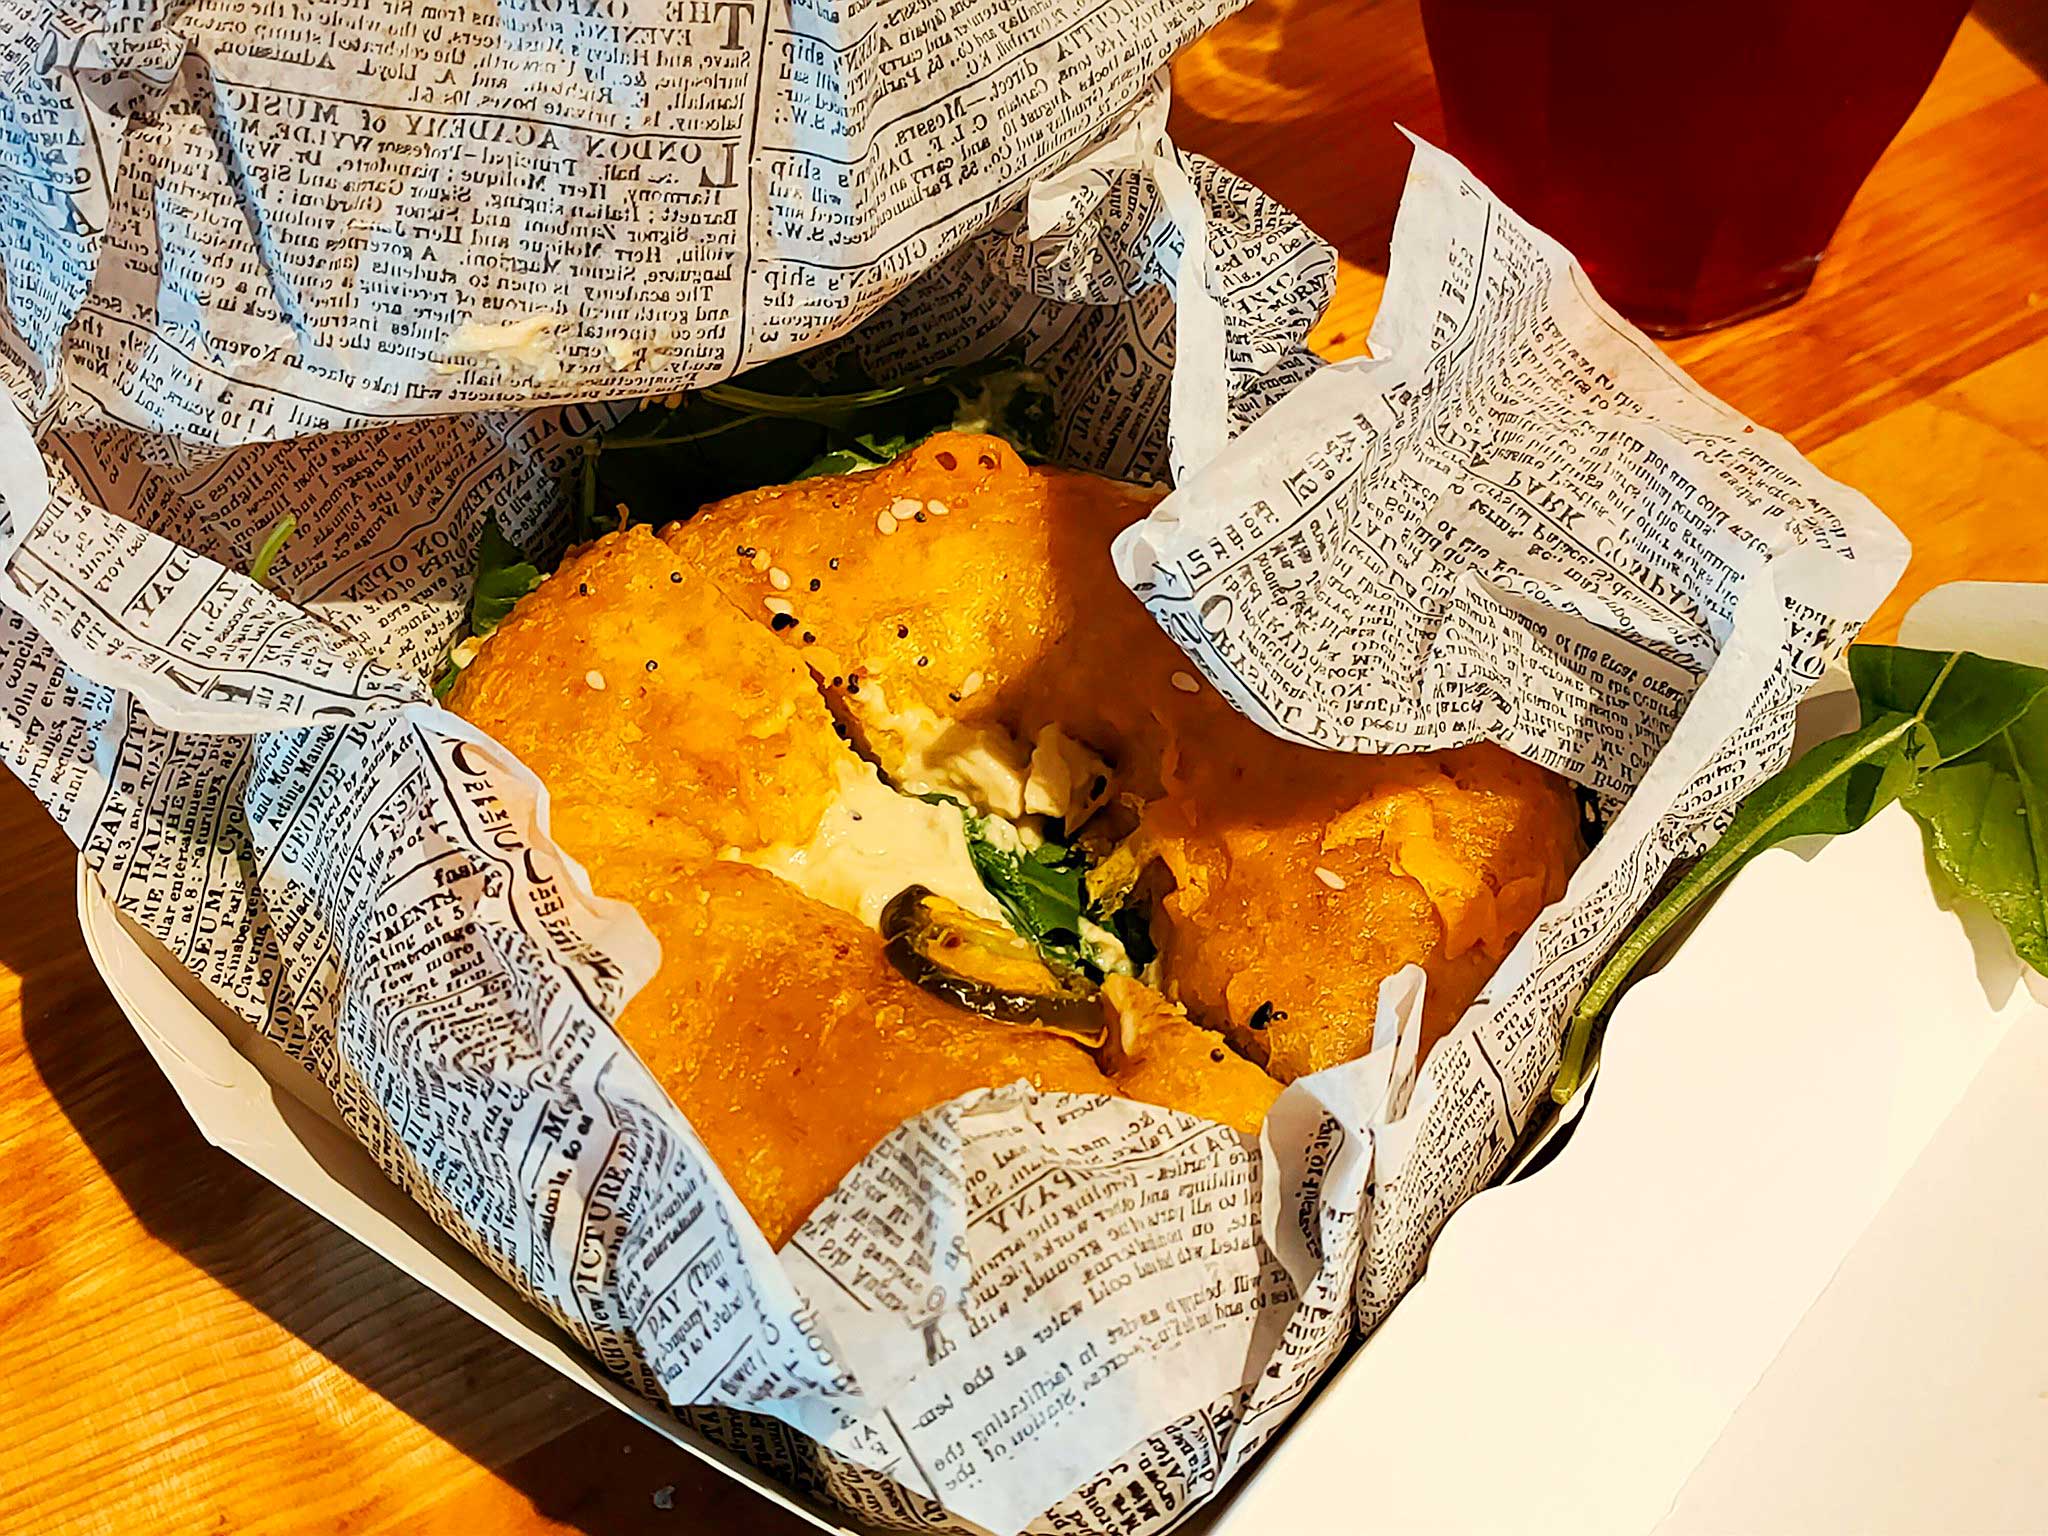 Jalapeño bagel in paper wrap